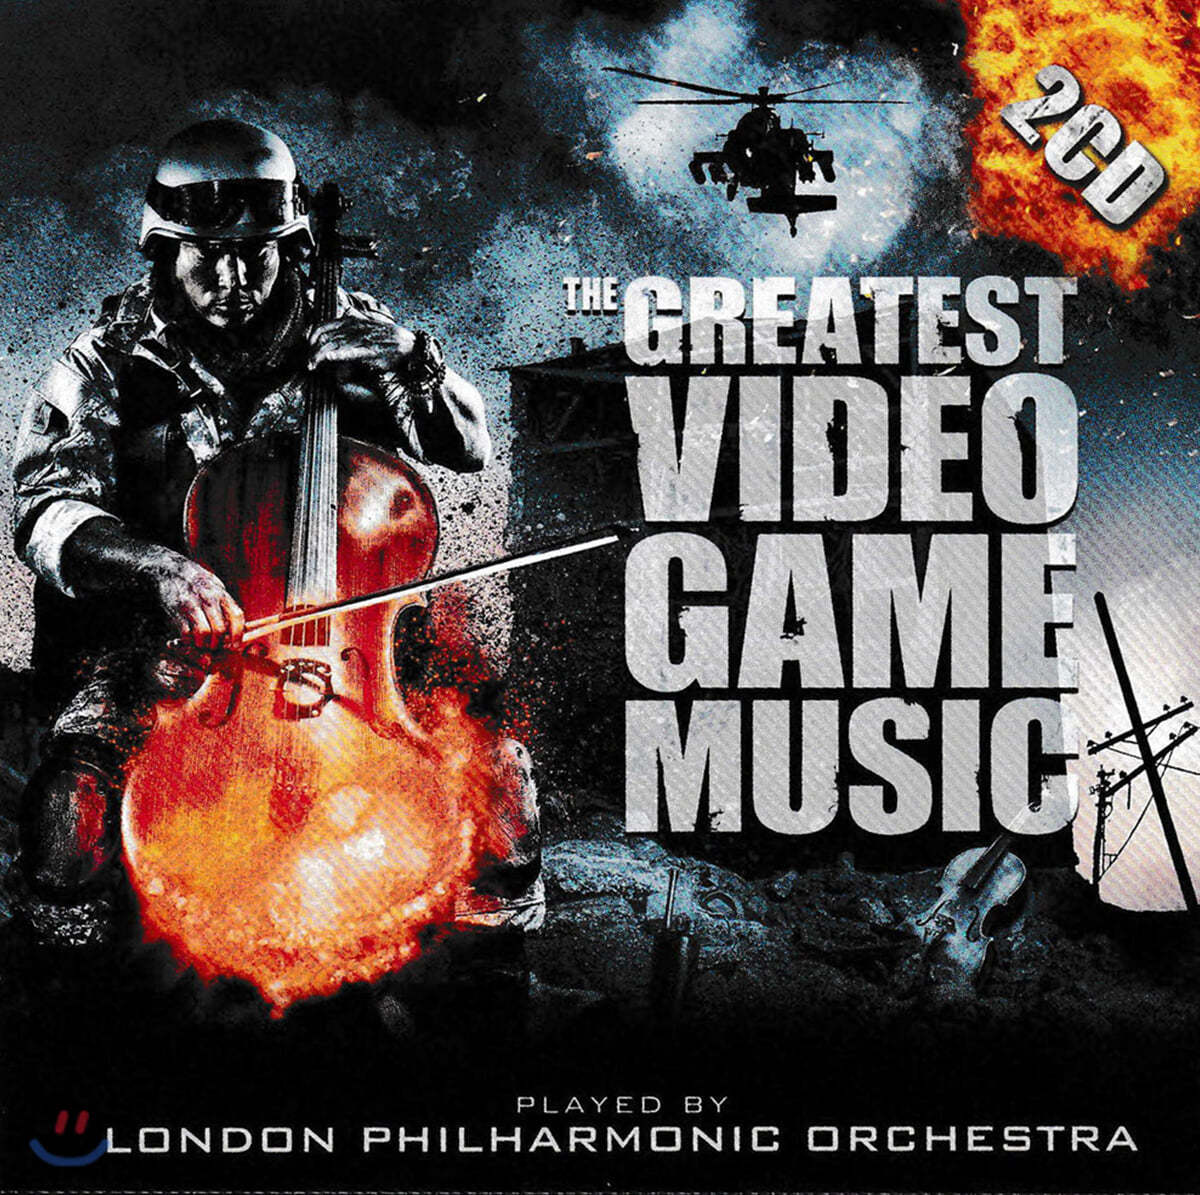 런던 필하모닉 오케스트라가 연주하는 게임 음악 모음집 (London Philharmonic Orchestra - The Greatest Video Game Music 1 & 2)